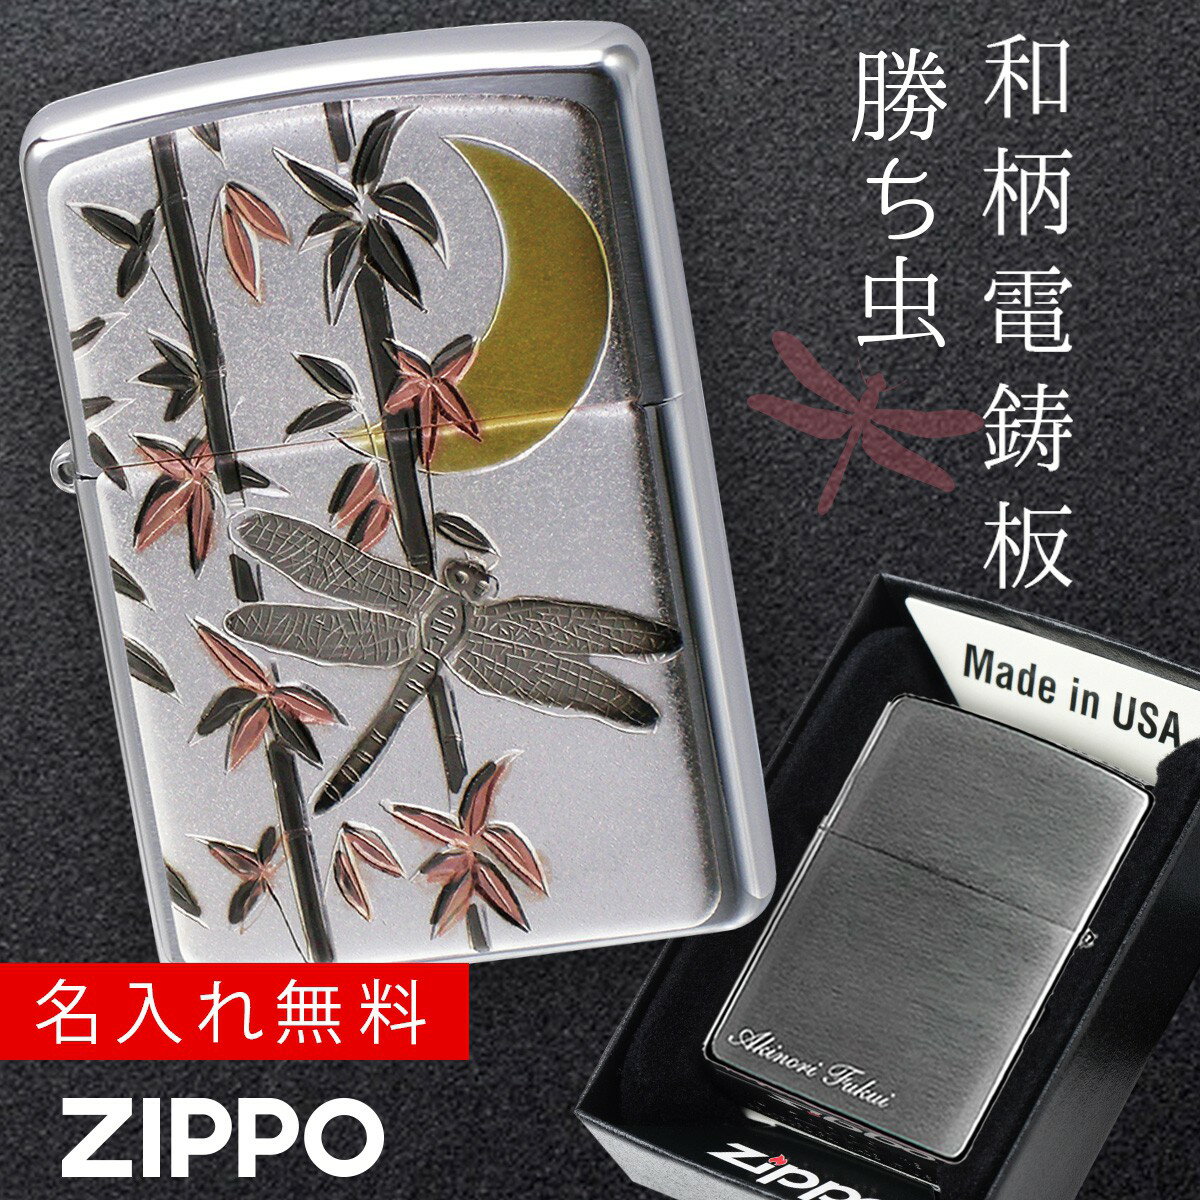 【返品不可】【返品不可】zippo 名入れ ジッポー ライター 和柄 伝統の技術 電鋳板 ZP 勝ち虫（とんぼ） 名入れ 返品不可 返品不可